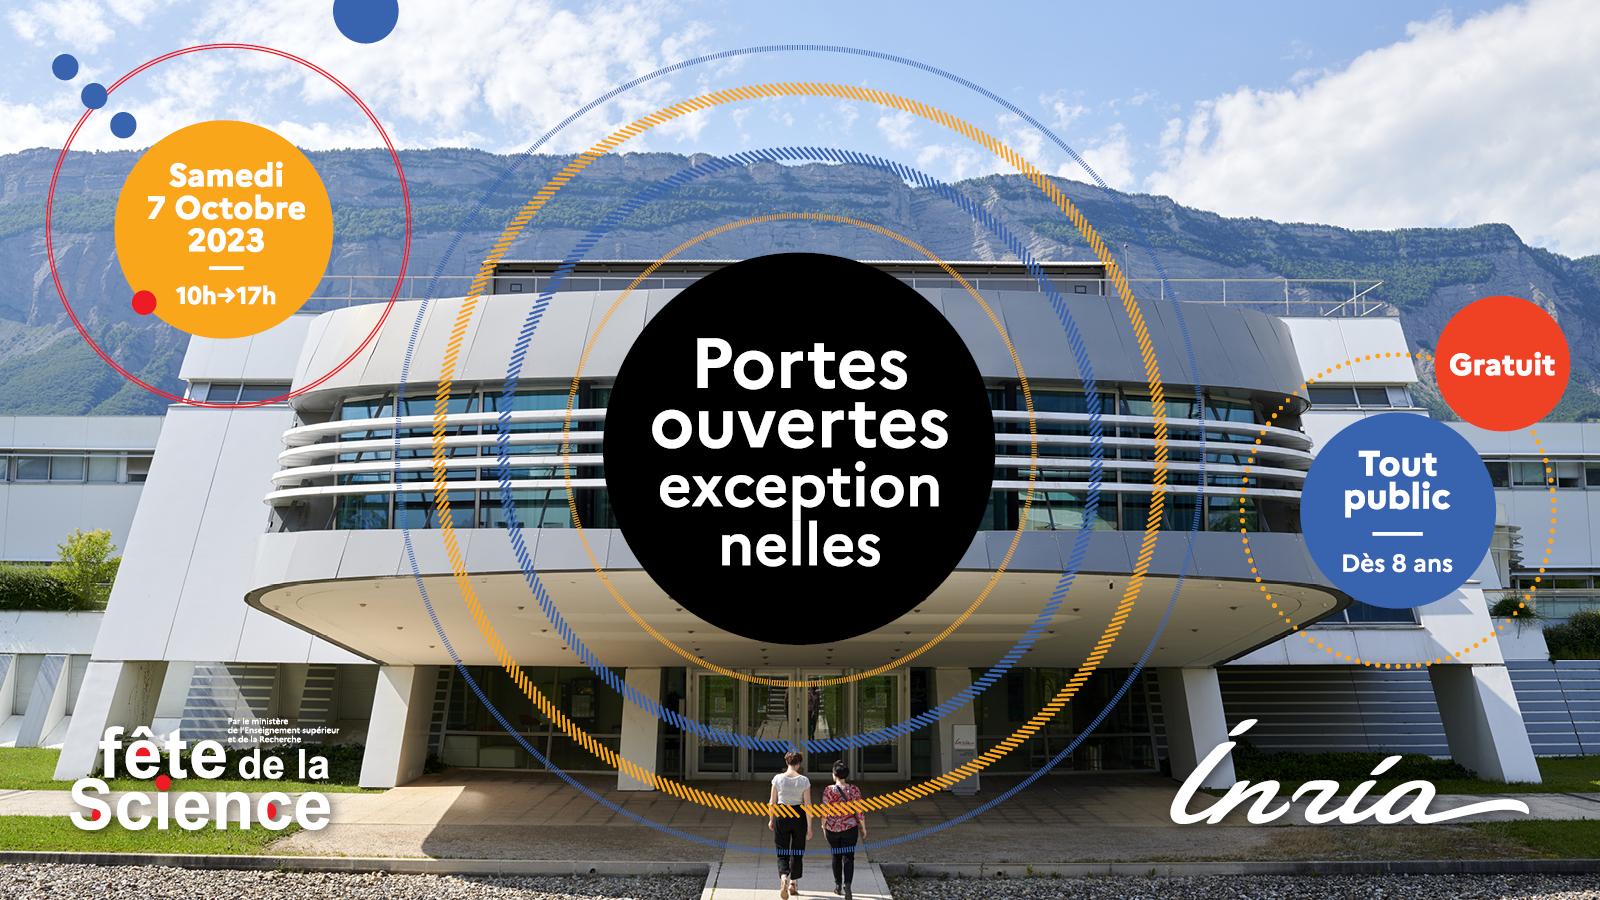 Portes ouvertes exceptionnelles du centre Inria de l'Université Grenoble Alpes le samedi 7 octobre de 10h à 17h. Gratuit, tout public, à partir de 8 ans.